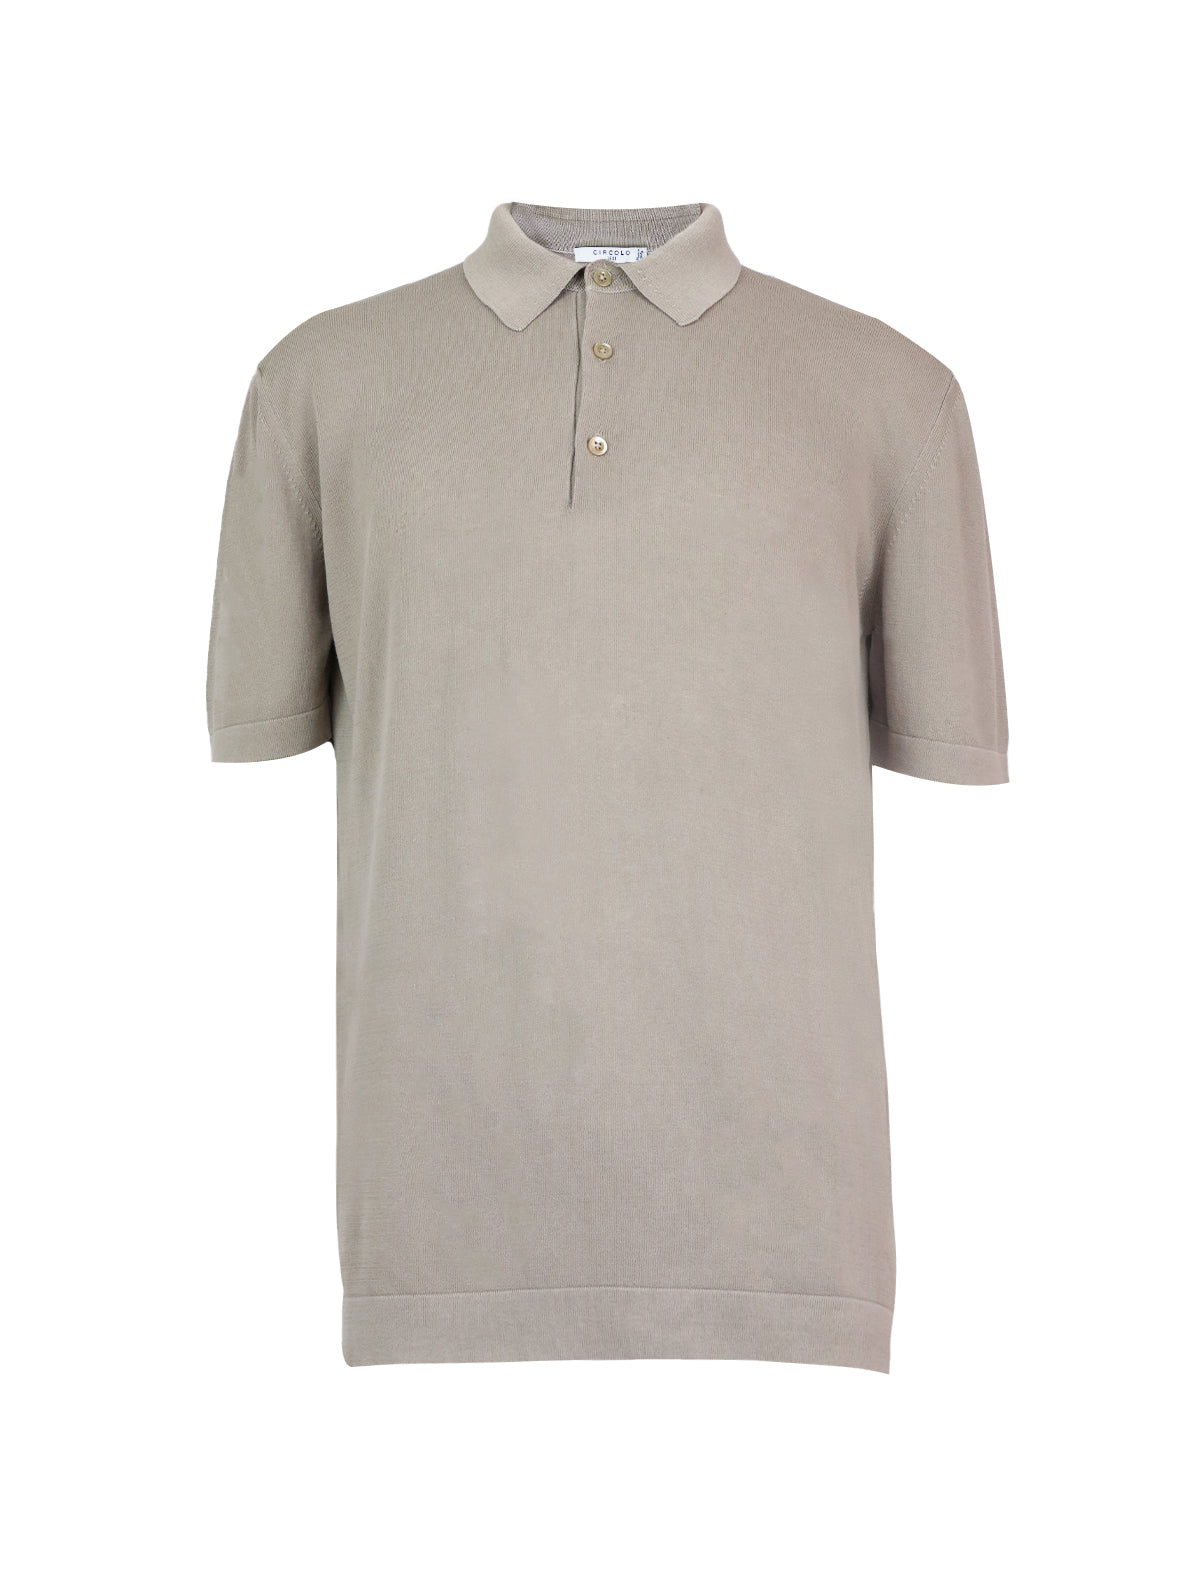 CIRCOLO 1901 Cotton Polo Shirt in Khaki